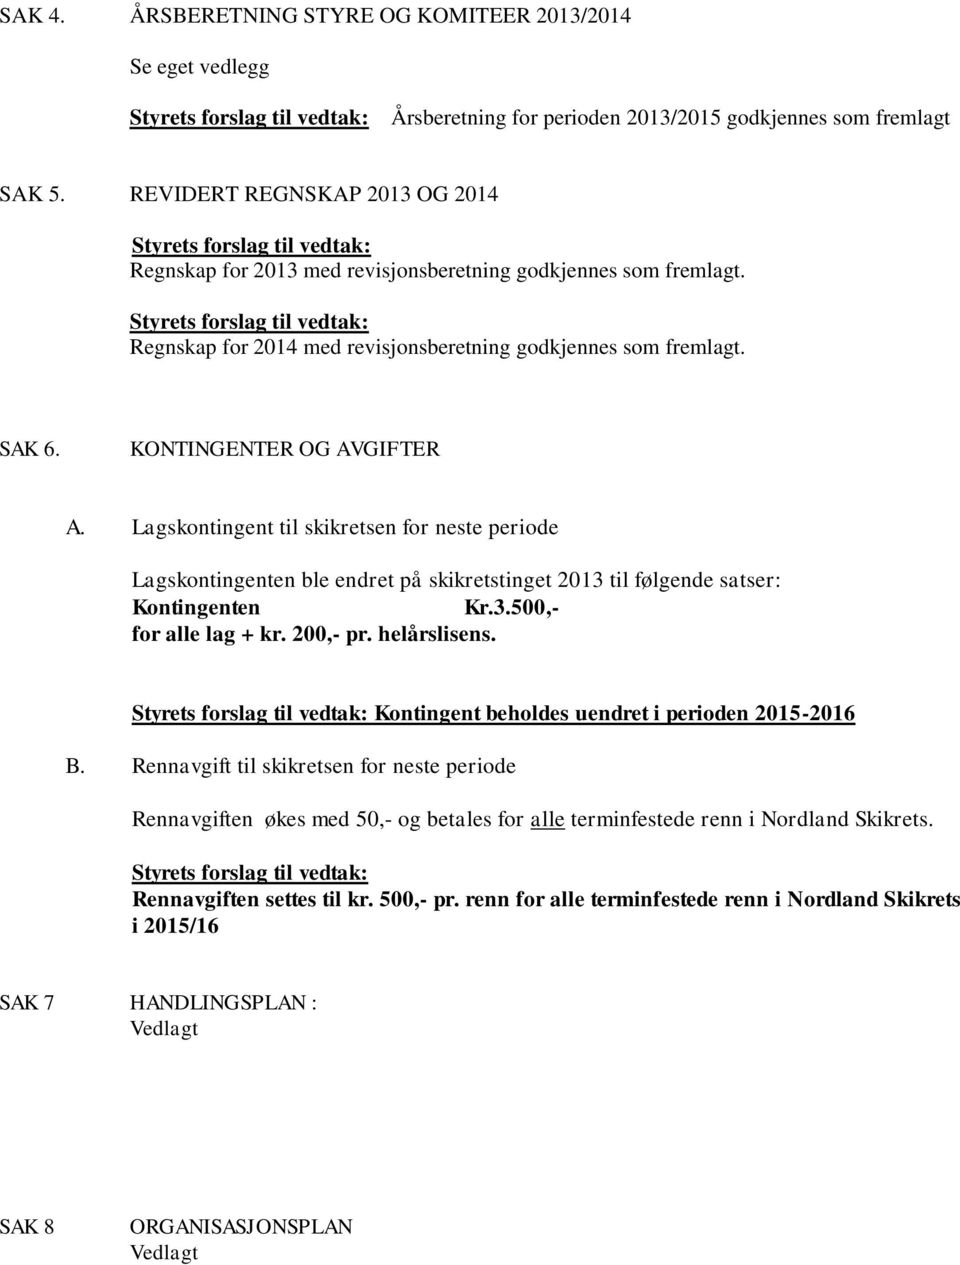 Styrets forslag til vedtak: Regnskap for 2014 med revisjonsberetning godkjennes som fremlagt. SAK 6. KONTINGENTER OG AVGIFTER A.